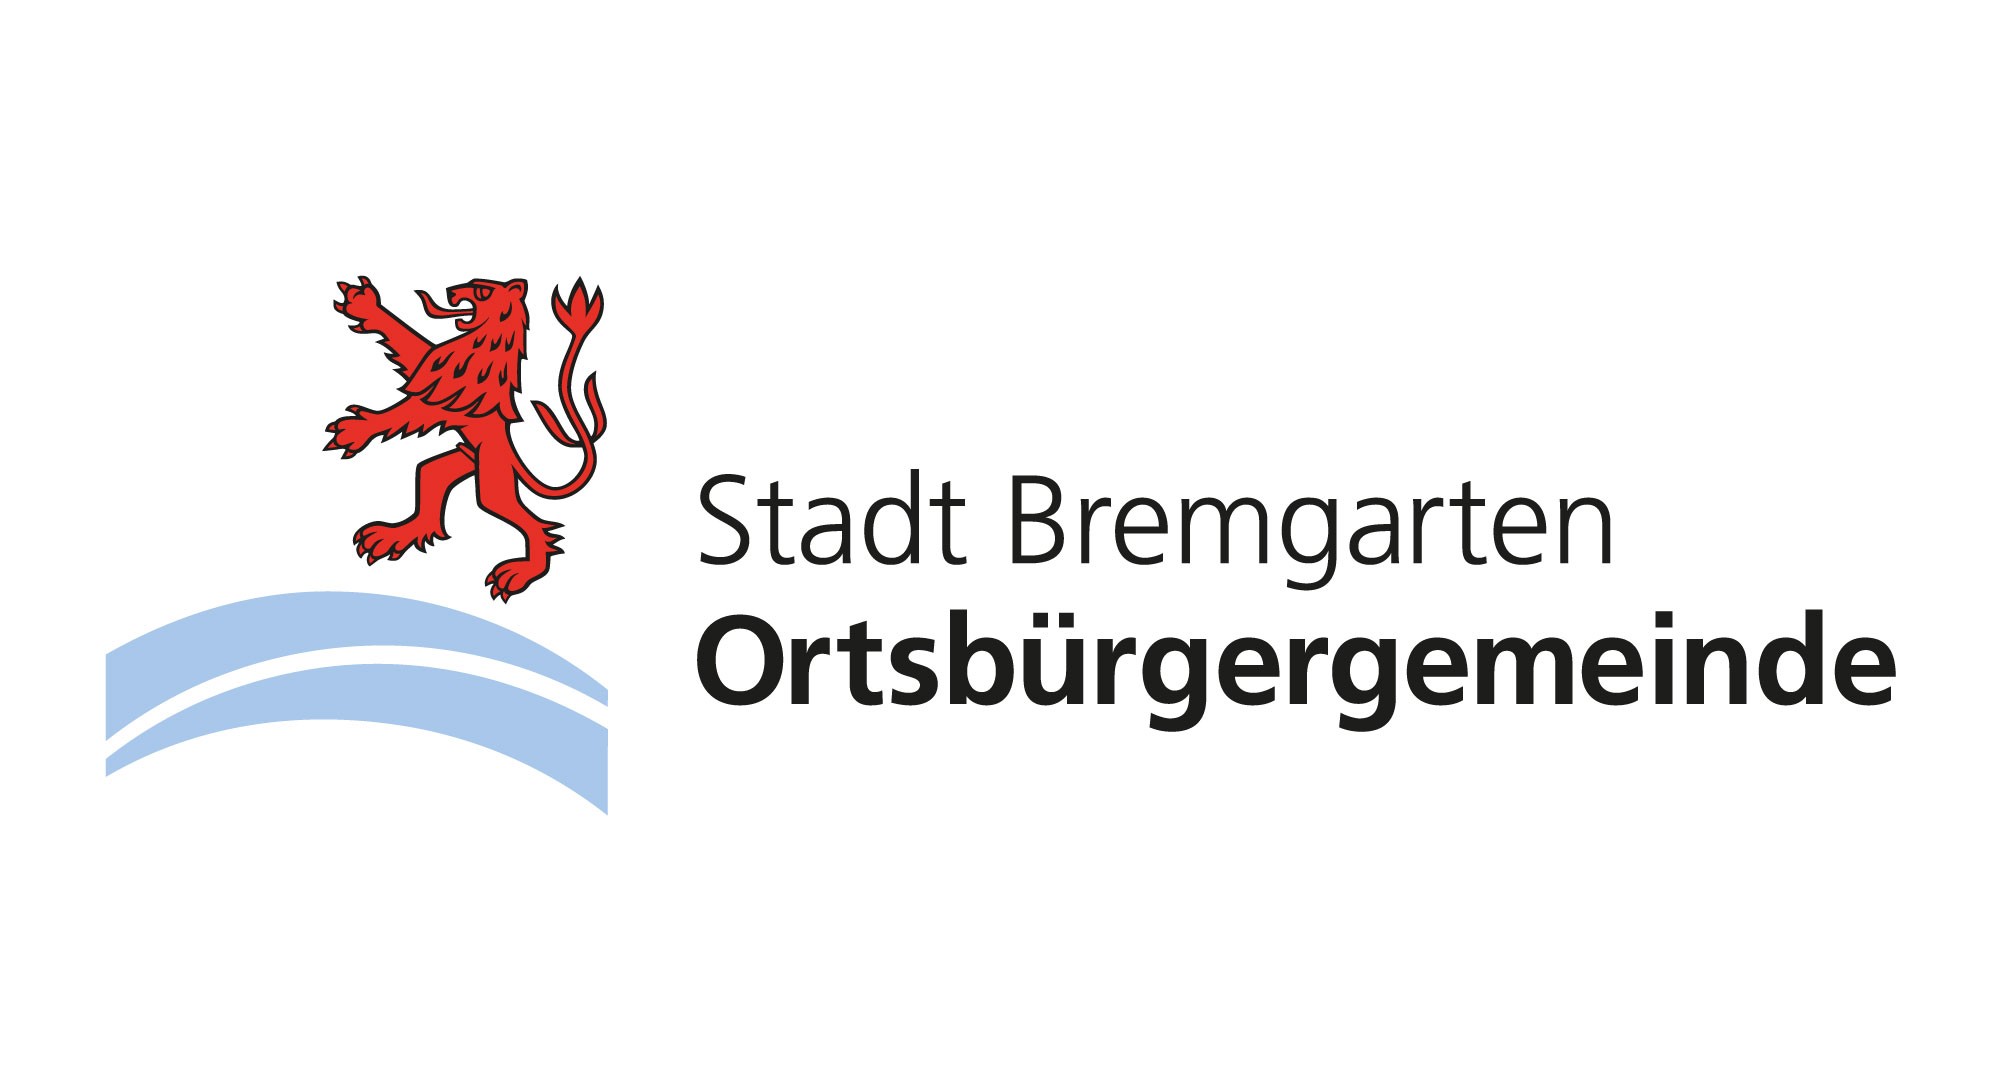 Logo der Ortsbürgergemeinde Bremgarten. Link führt zur Webseite www.bremgarten.ch/stadt in neuer Tab.